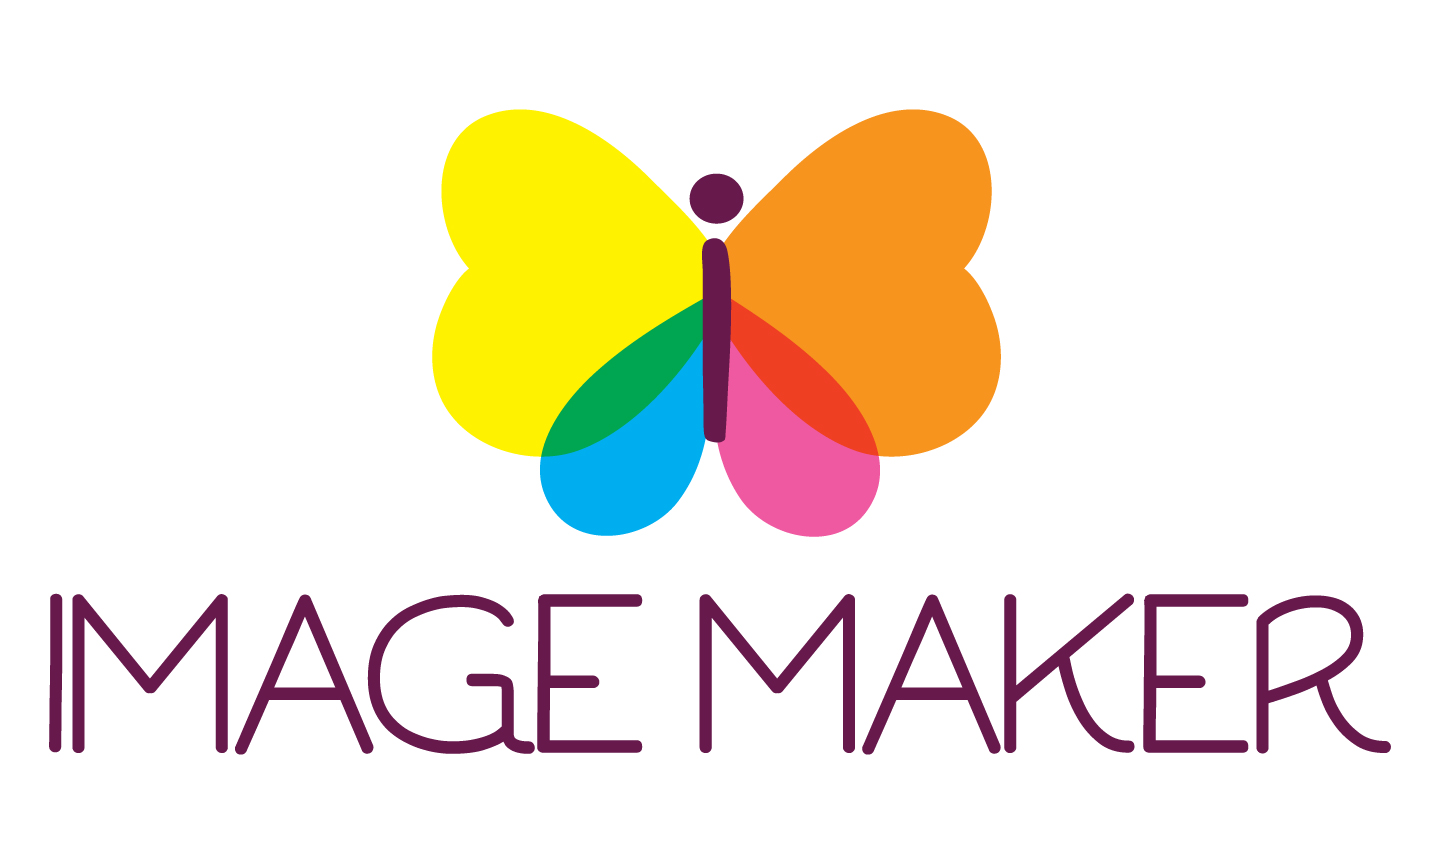 image-maker-logo-final.jpg